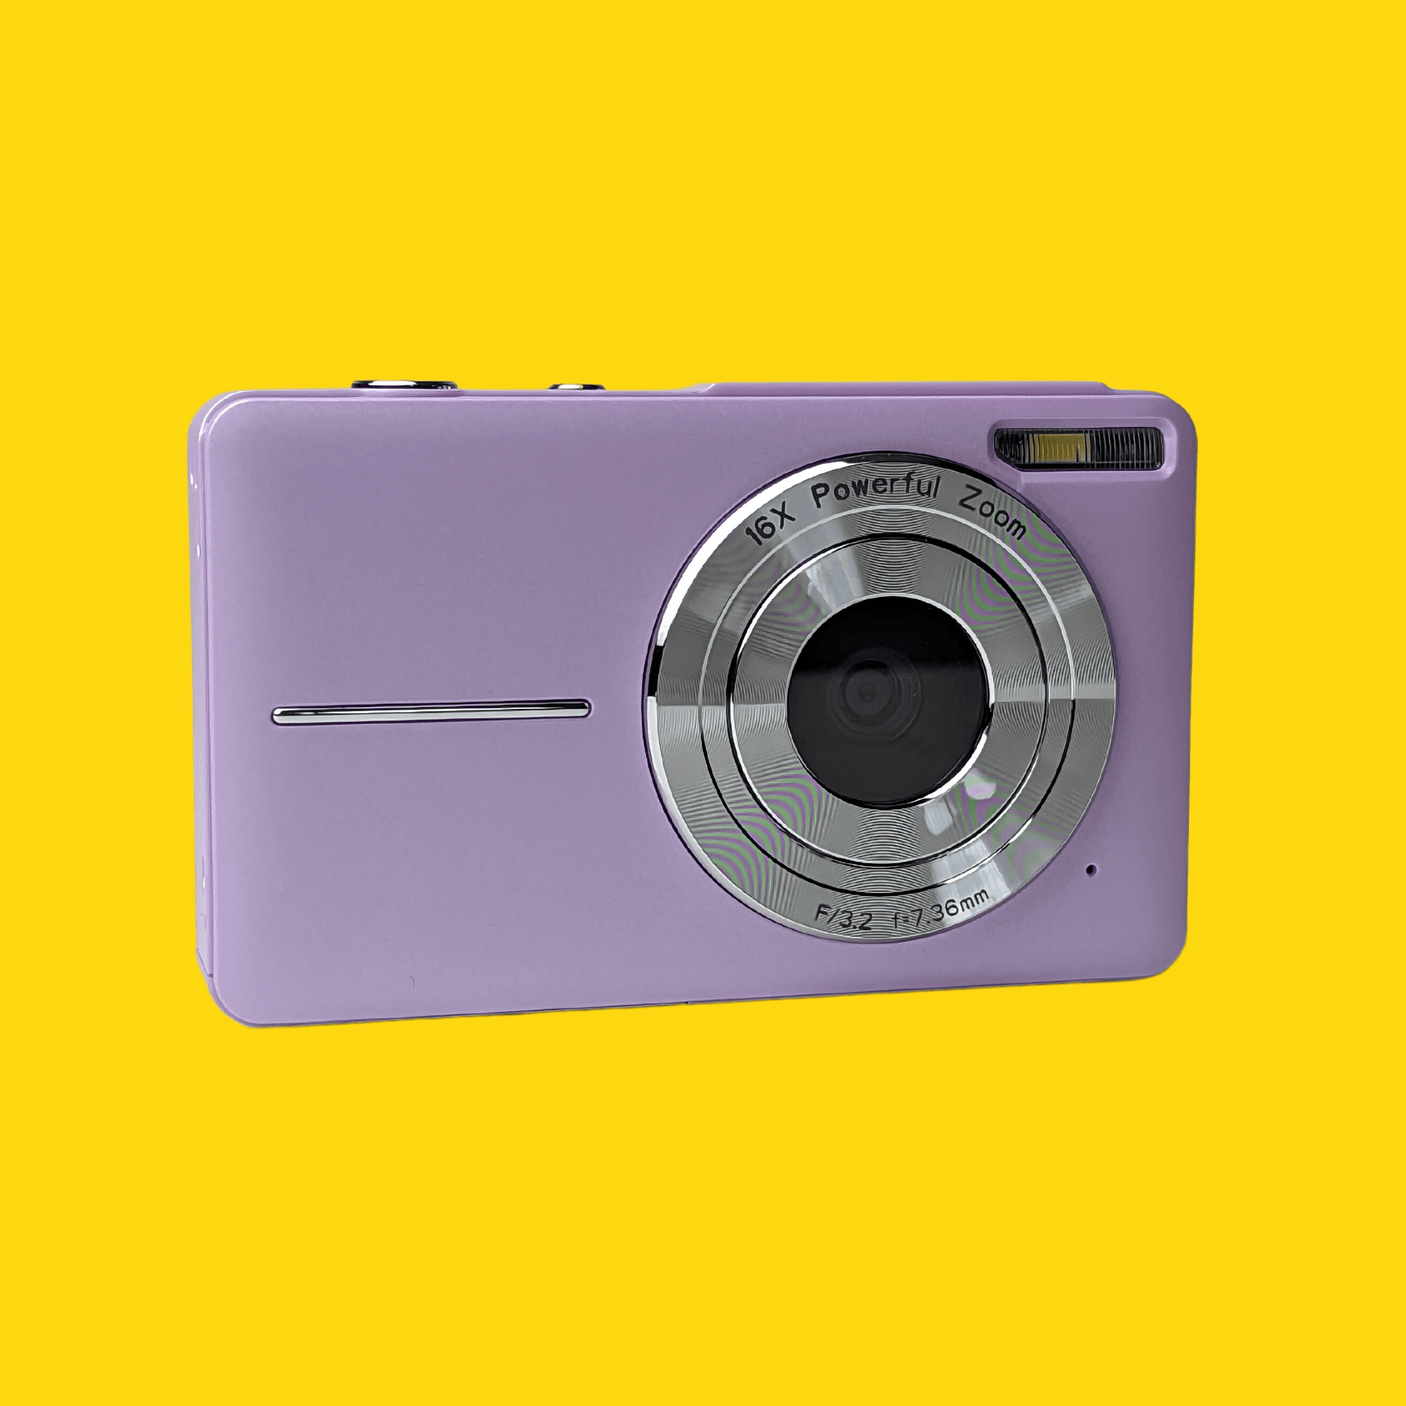 Retro Purple Compact Digital Camera - Digicam